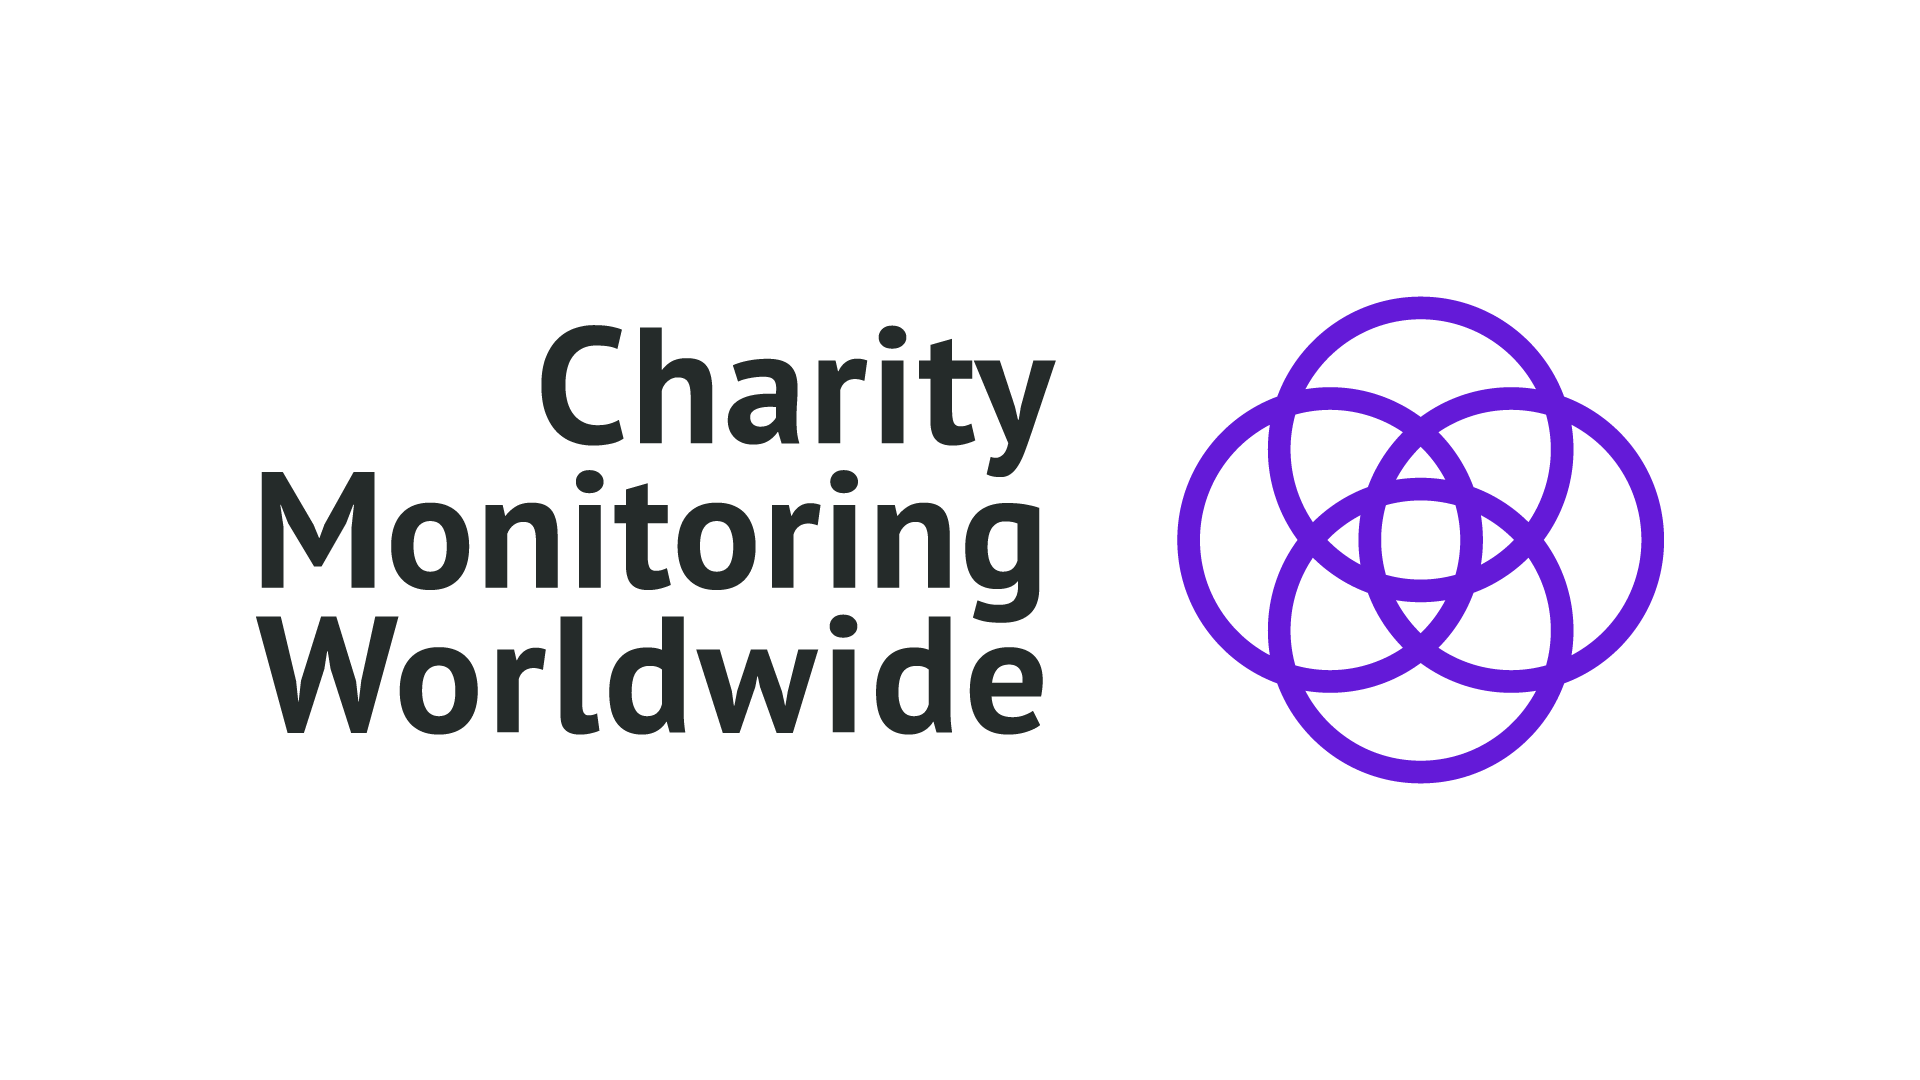 Fundación Lealtad forma parte de la plataforma internacional ICFO que evalúa la Transparencia de las ONG